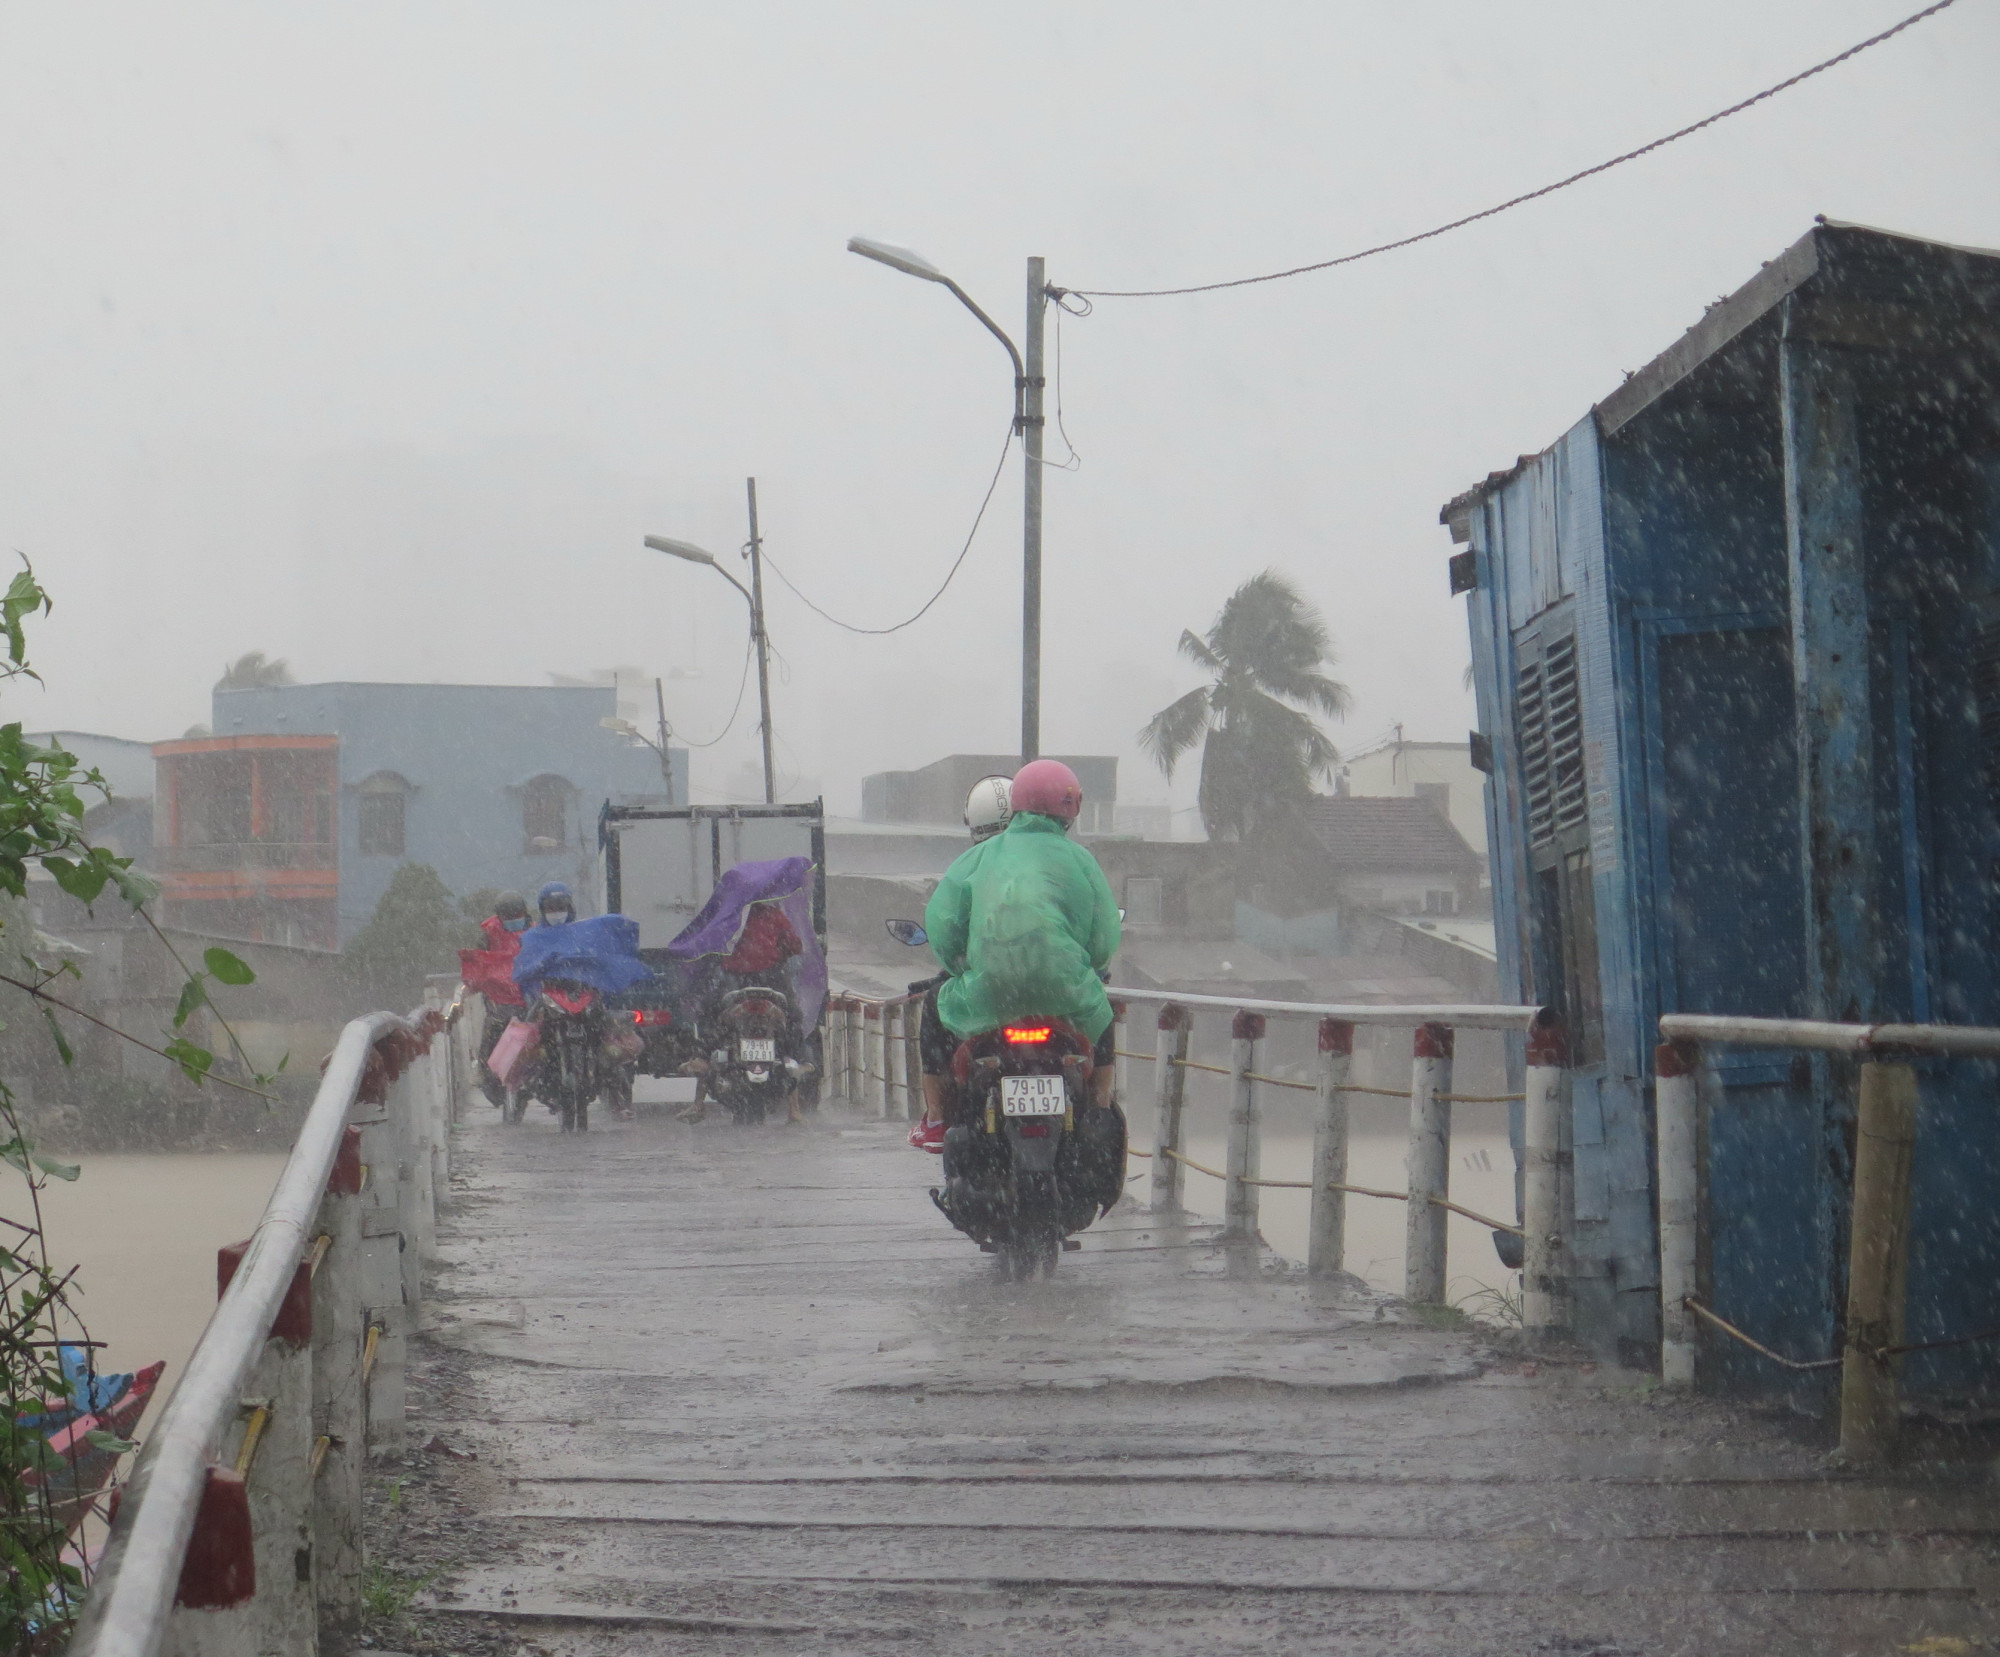 Người dân rất mong sớm có cầu mới để đi lại cho an toàn, nhất là trong mùa mưa bão hiện nay